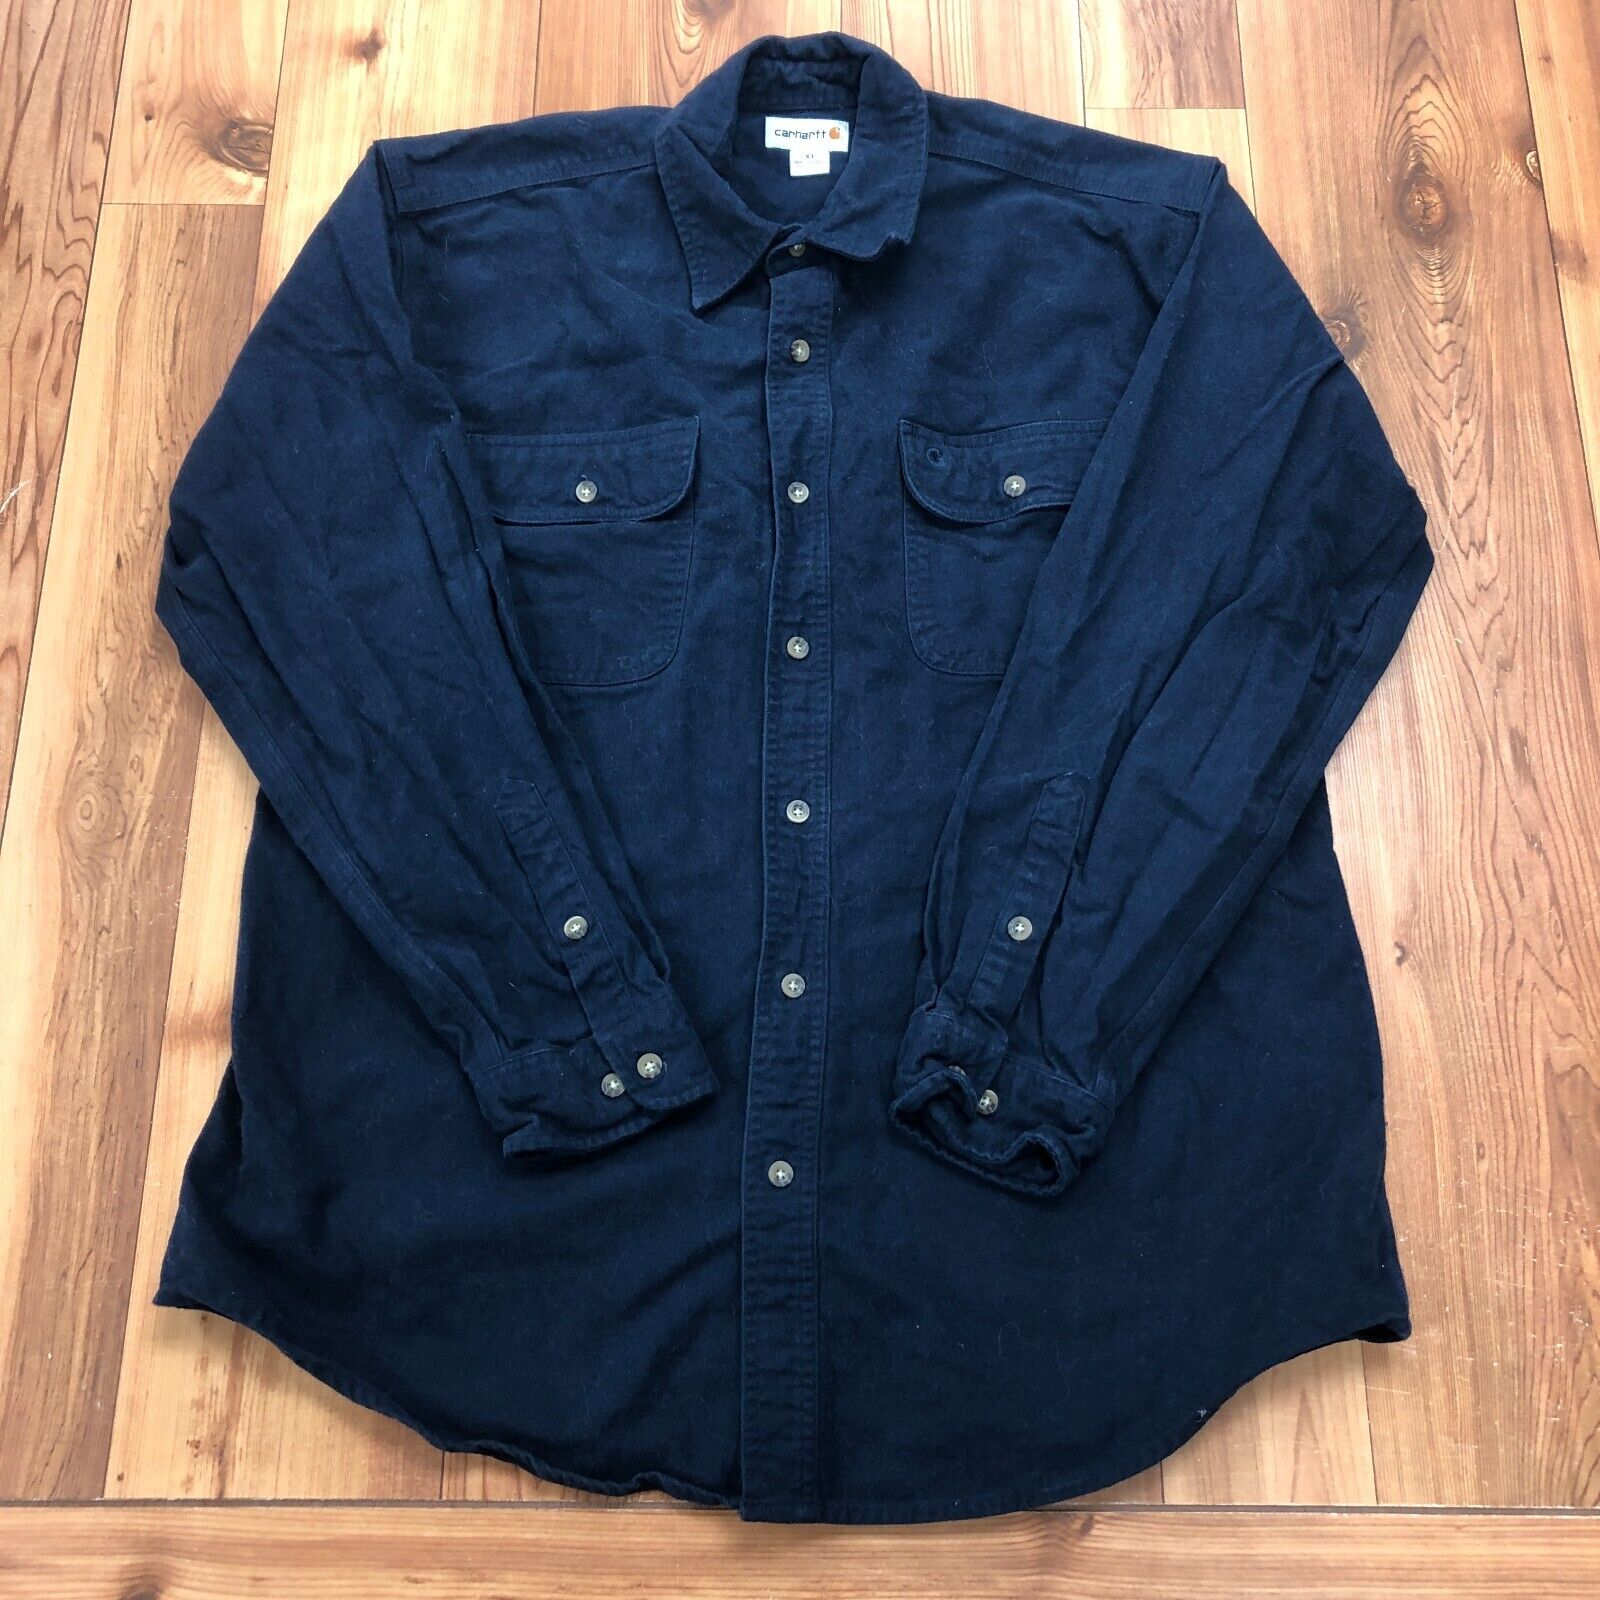 Carhartt Navy Blue Cotton Collar Long Sleeve Casual Button Up Shirt Mens Size XL